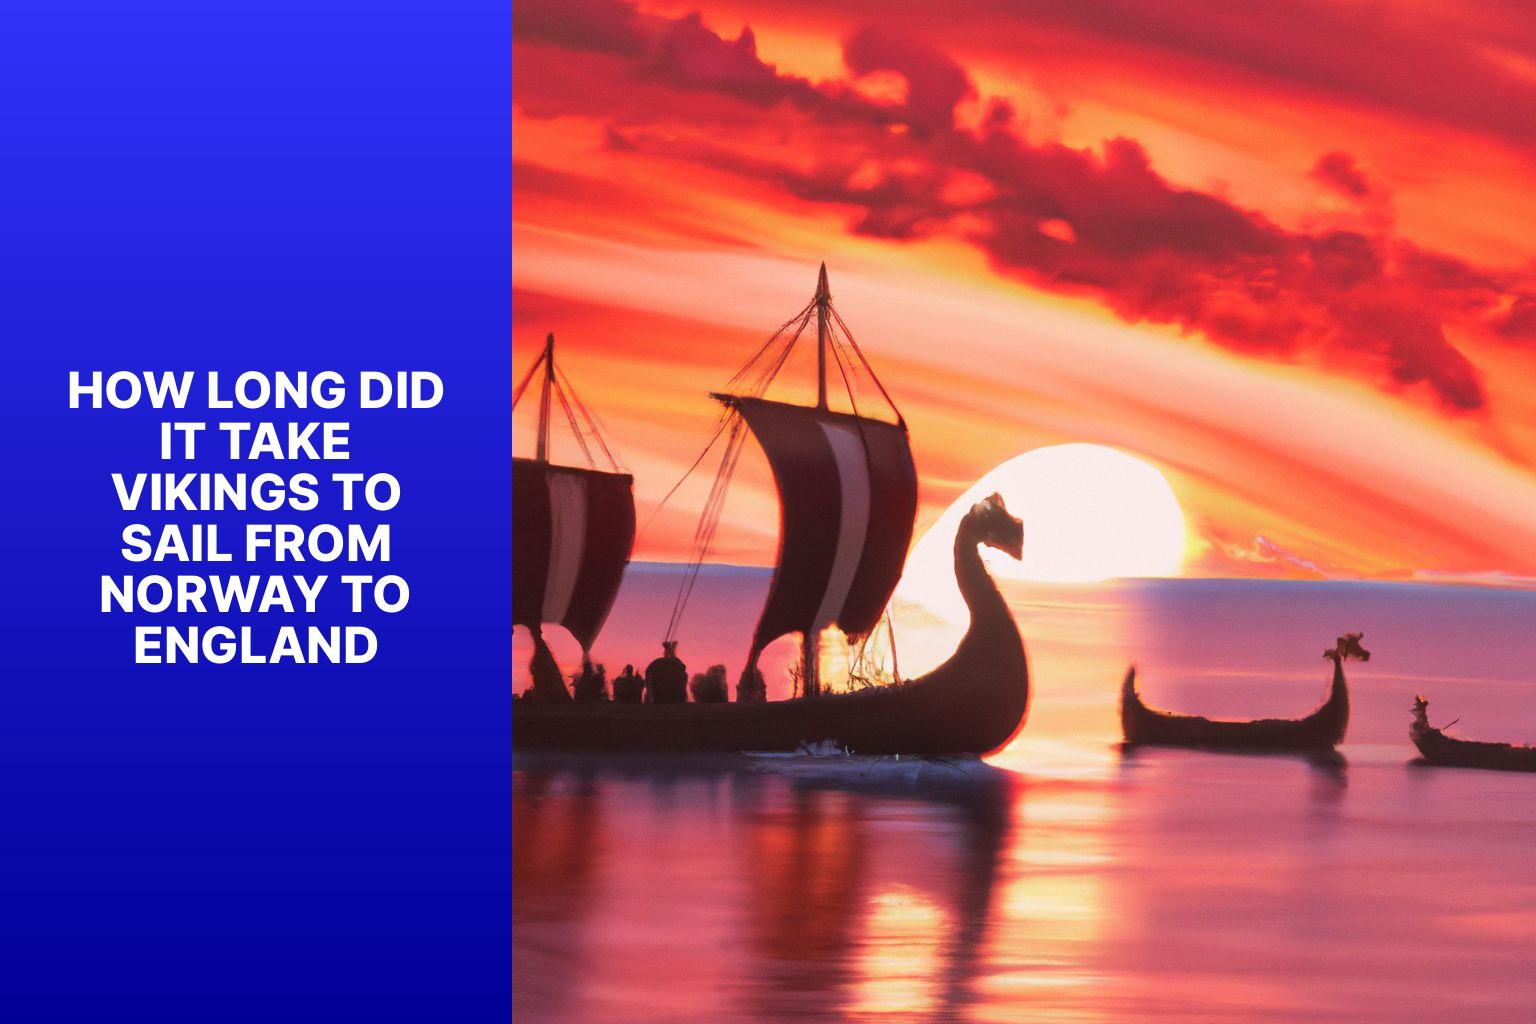 Vikings’ Norway to England Voyage Duration: Revealing the Time Taken